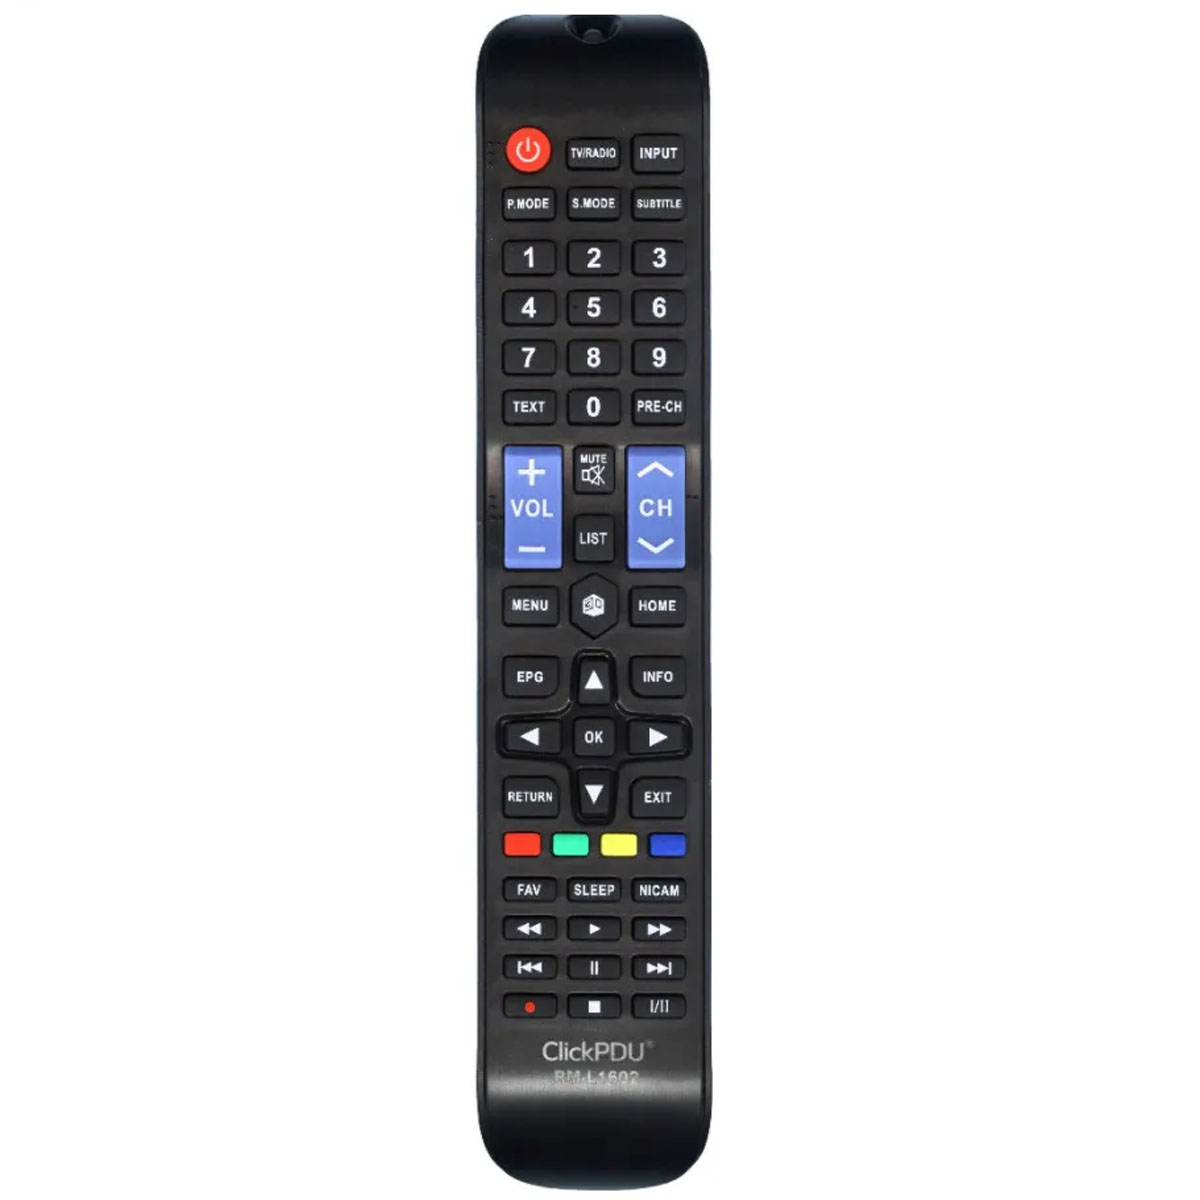 Пульт ДУ RM-L1602 для телевизоров AKAI, цвет черный